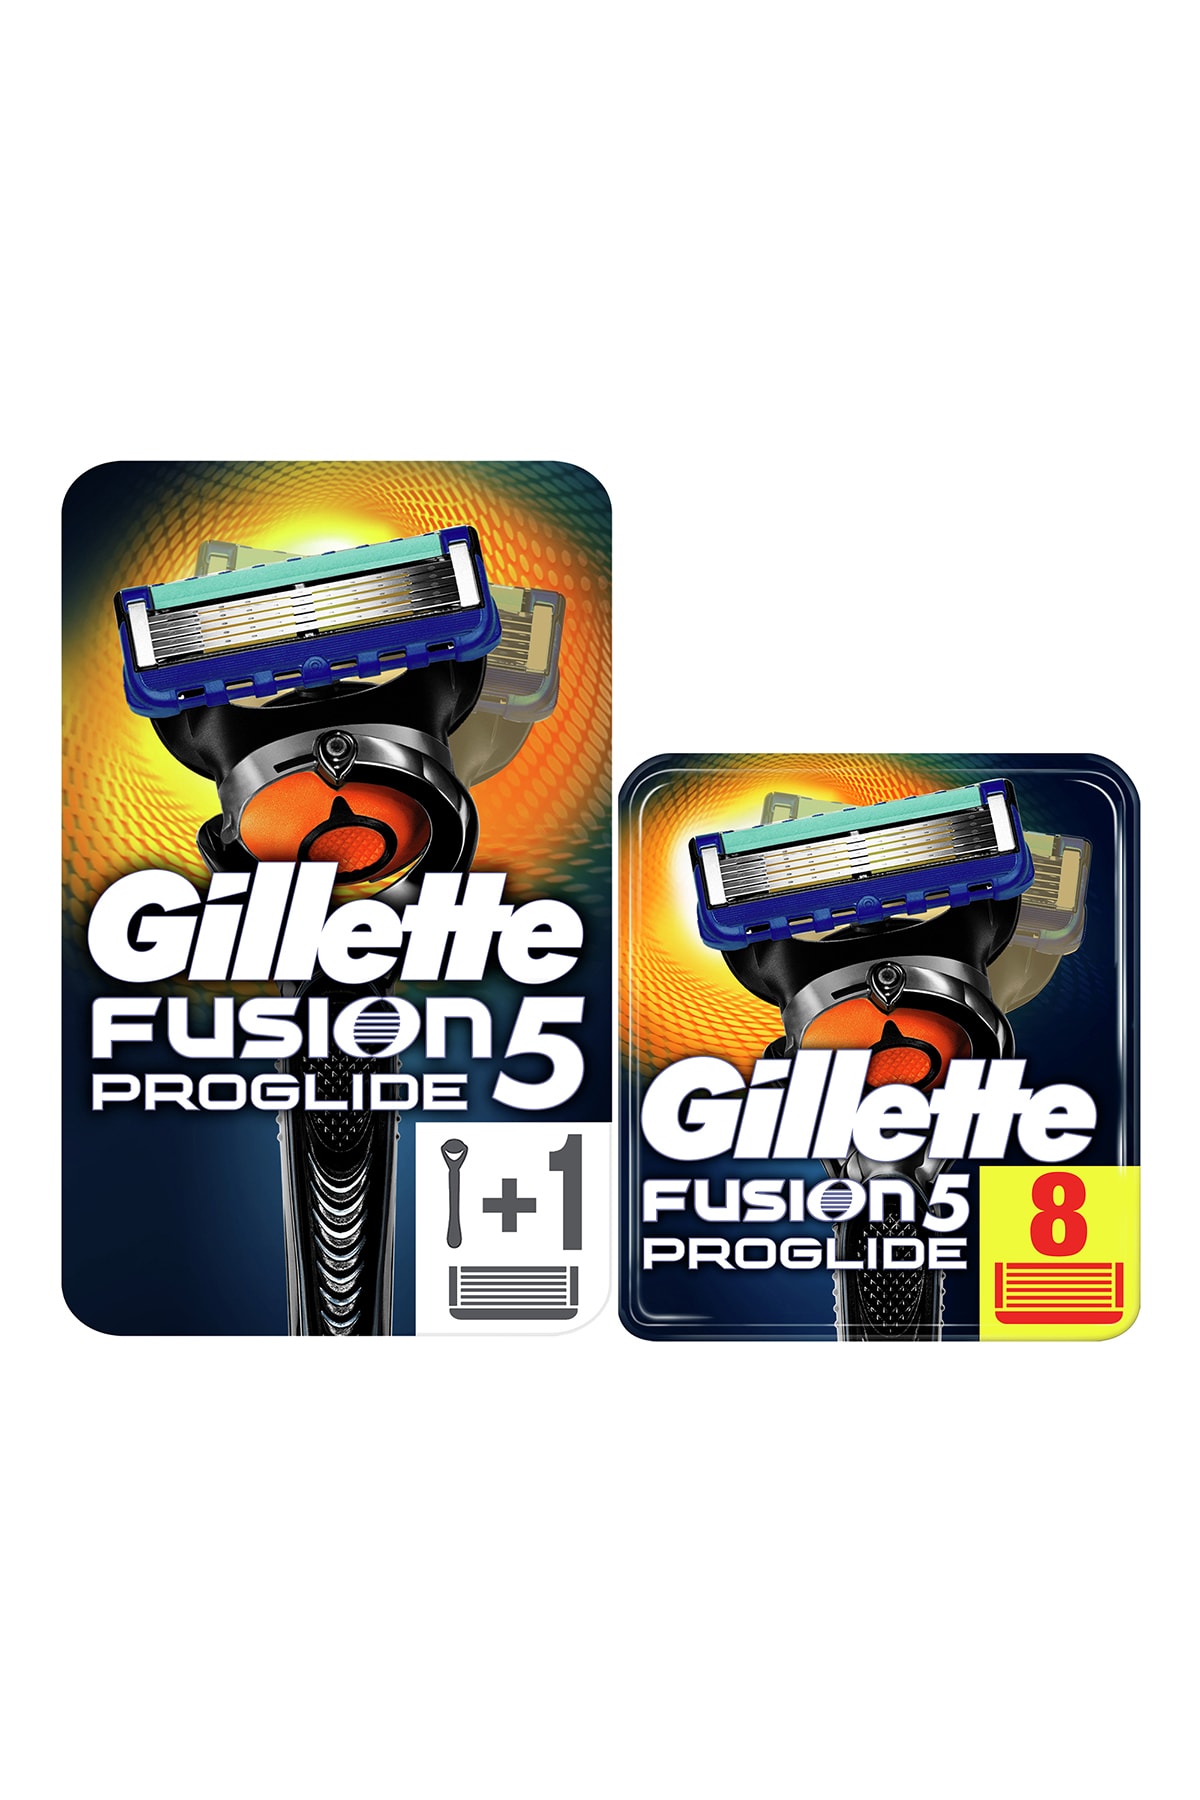 Gillette Fusion Proglide Flexball Tıraş Makinesi + Fusion Proglide Yedek Tıraş Bıçağı 8'Li Karton Paket